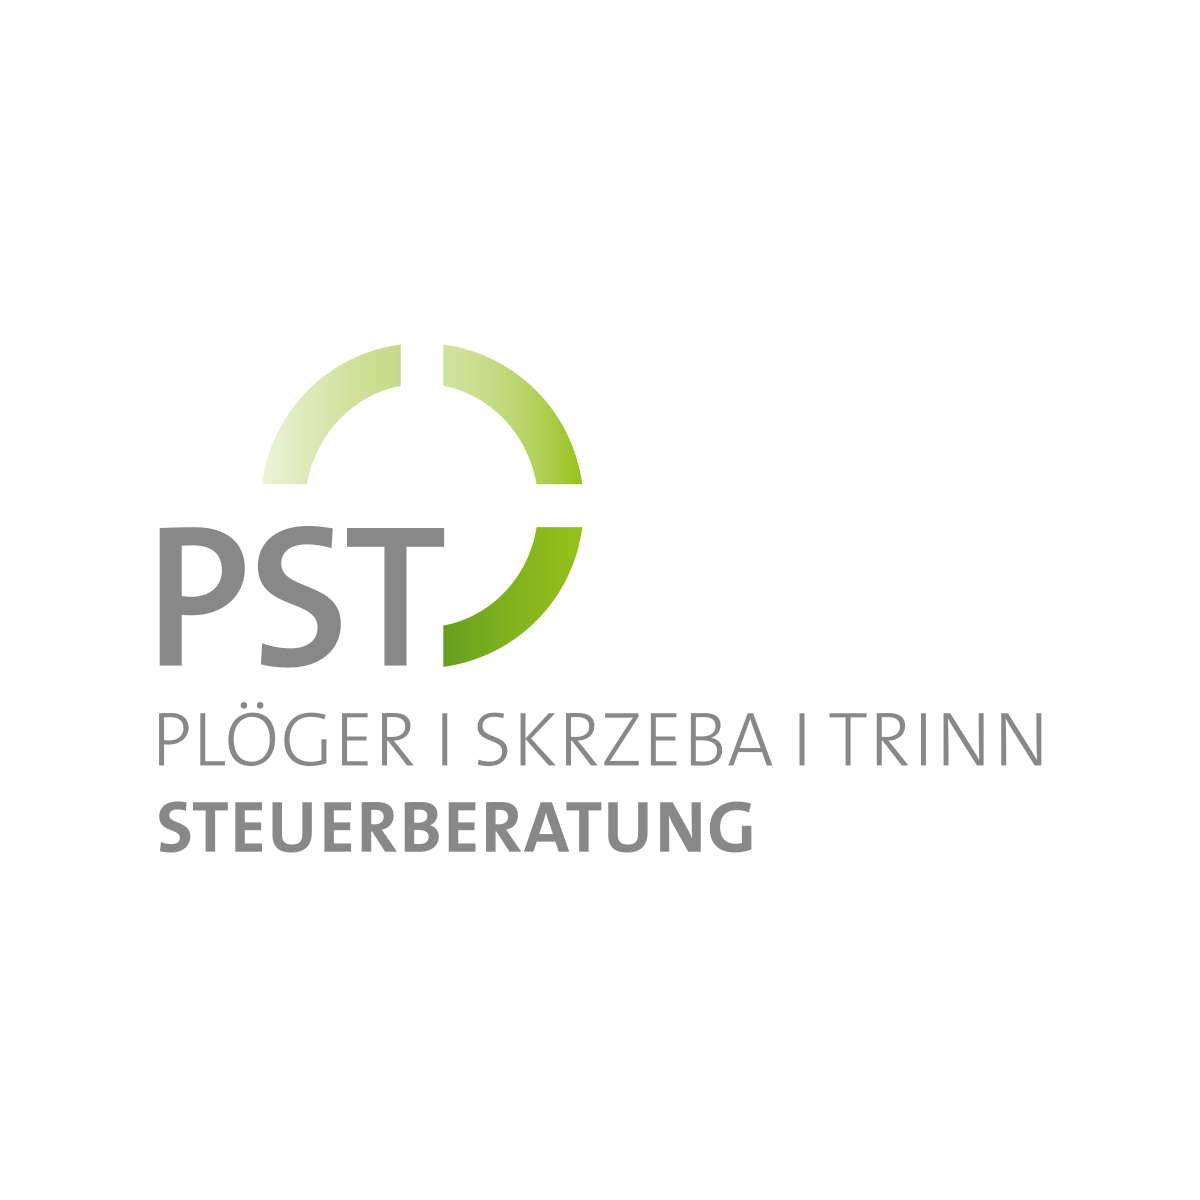 PST Plöger Skrzeba Trinn Steuerberatungsgesellschaft PartG mbB in Schloss Holte Stukenbrock - Logo